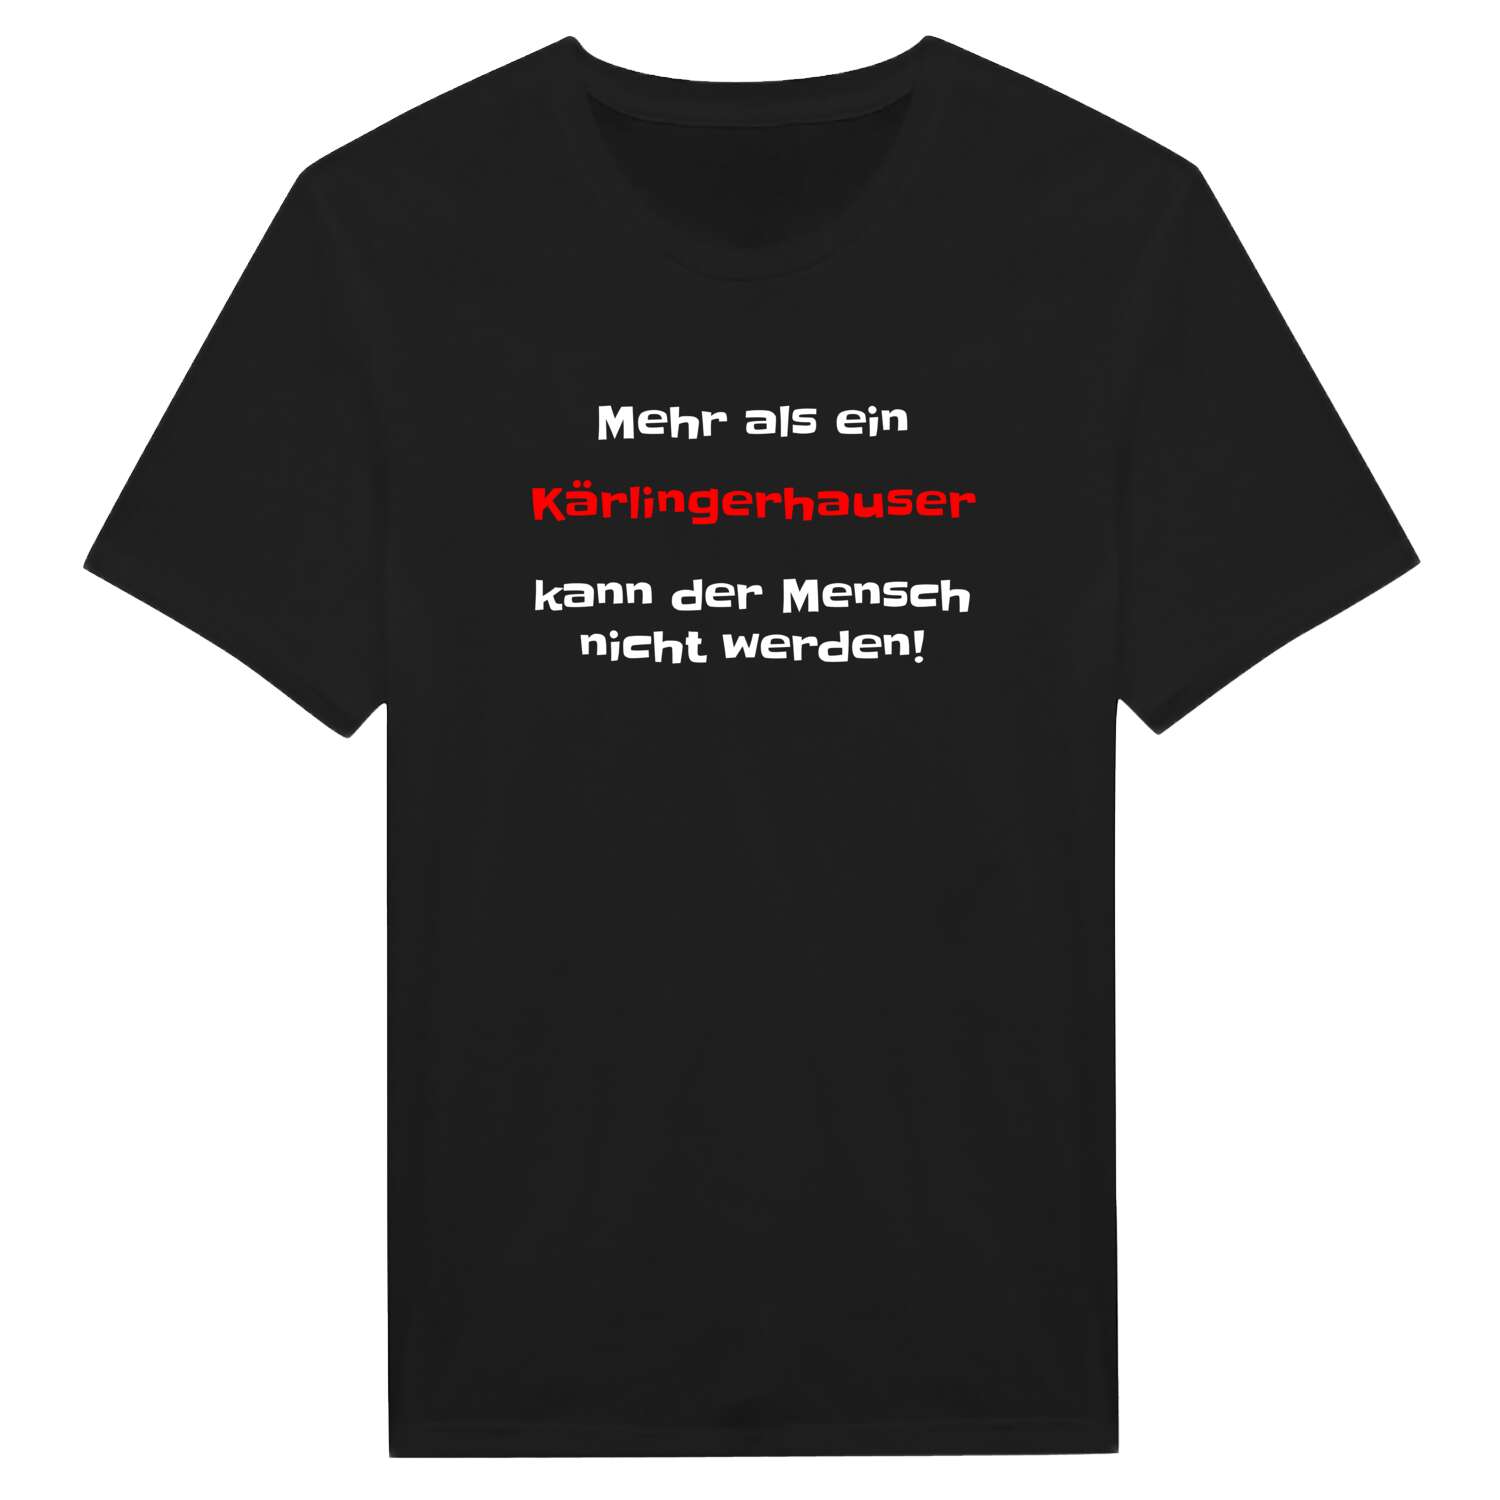 Kärlingerhaus T-Shirt »Mehr als ein«